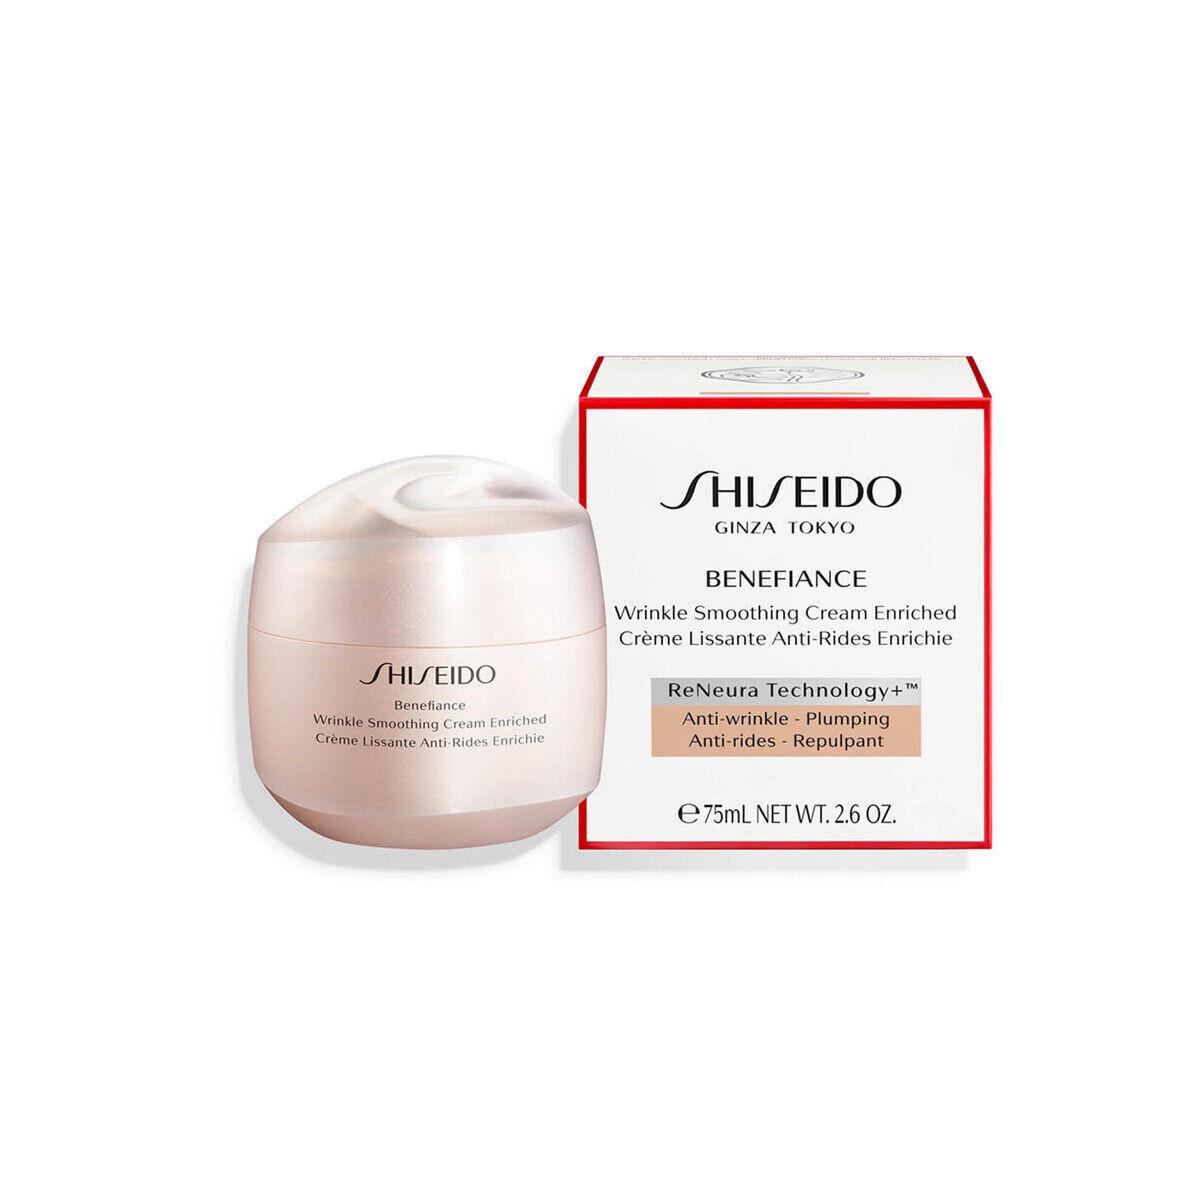 Shiseido Benefiance Wrinkle Smoothing Cream Enriched - Size 75mL / 2.6 Oz